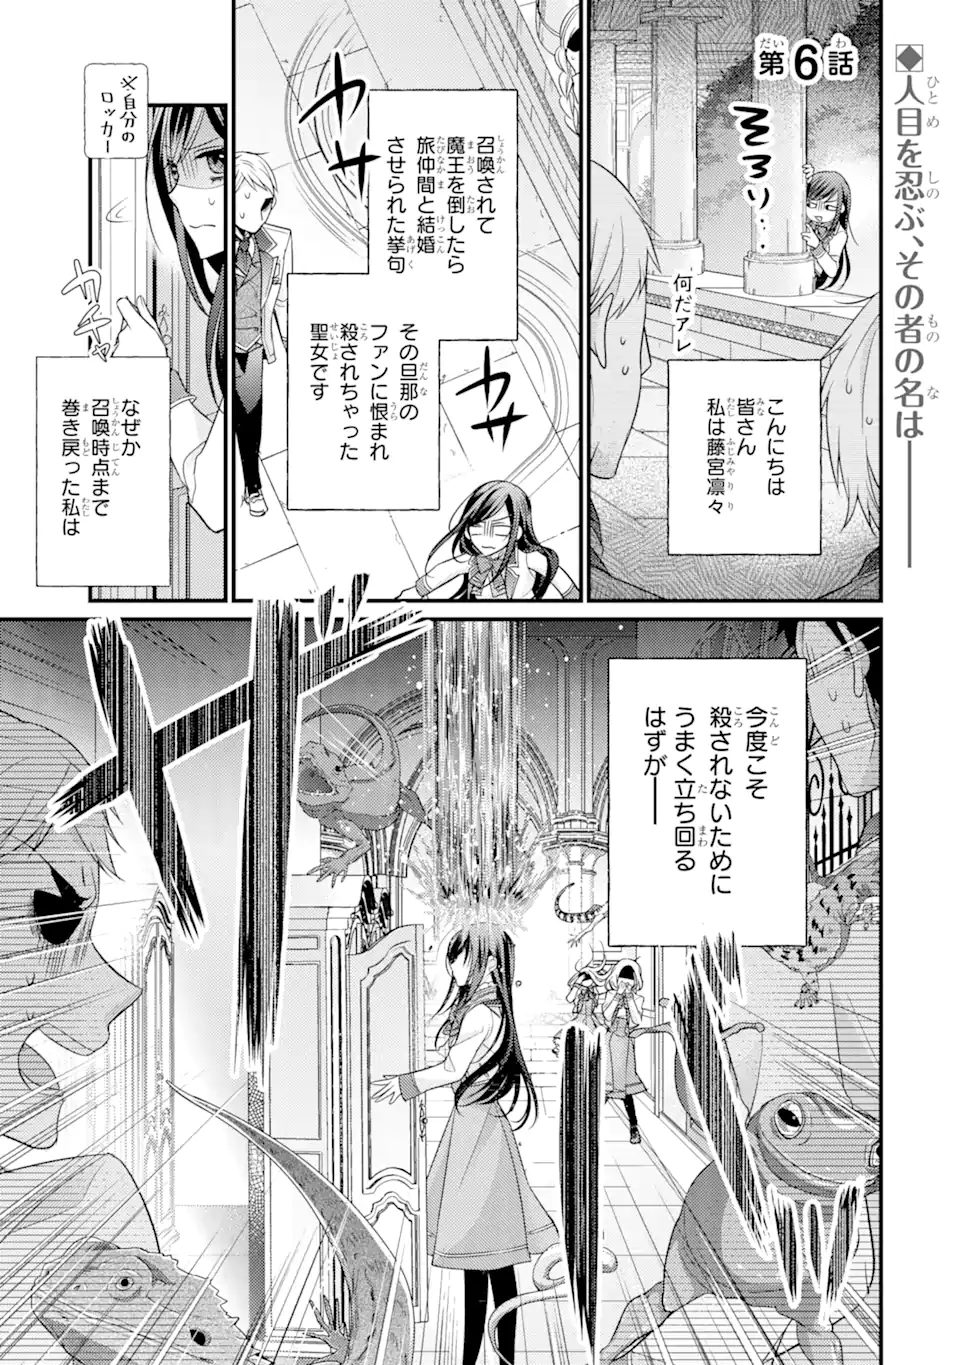 Kekkon suru Shinde Shimau no de, Kanst Seijo (Lv. 99) wa Meshi Tero Shimasu! - Chapter 6.1 - Page 1